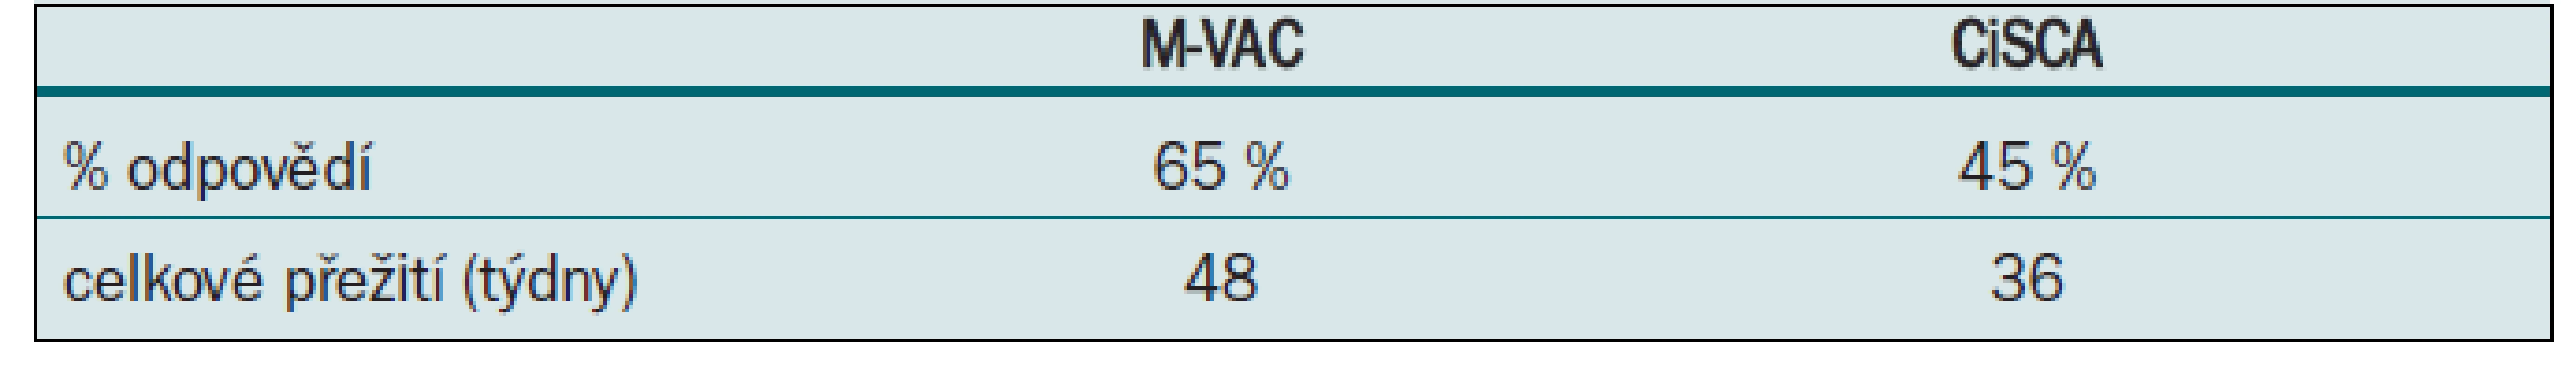 M-VAC vs CISCA.